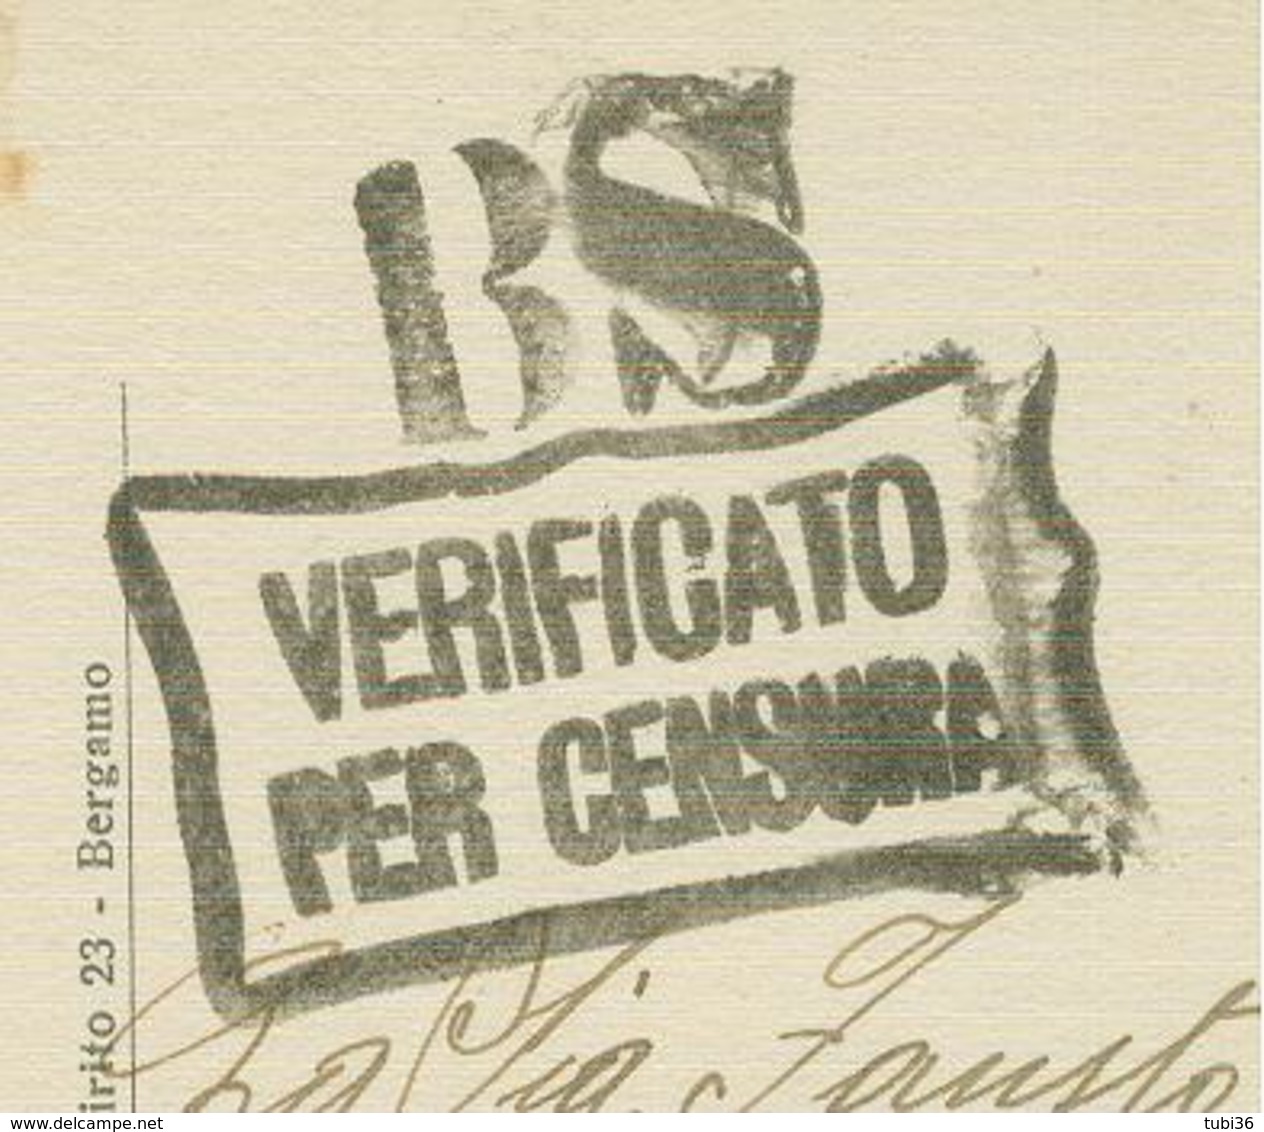 IMPERIALE Cent.10,TARIFFA FIRMA E DATA,1940,TIMBRO POSTE BRENO(BRESCIA),"BS-VERIFICATO PER CENSURA",BRENO VILLA GHEZA,RR - Marcophilie